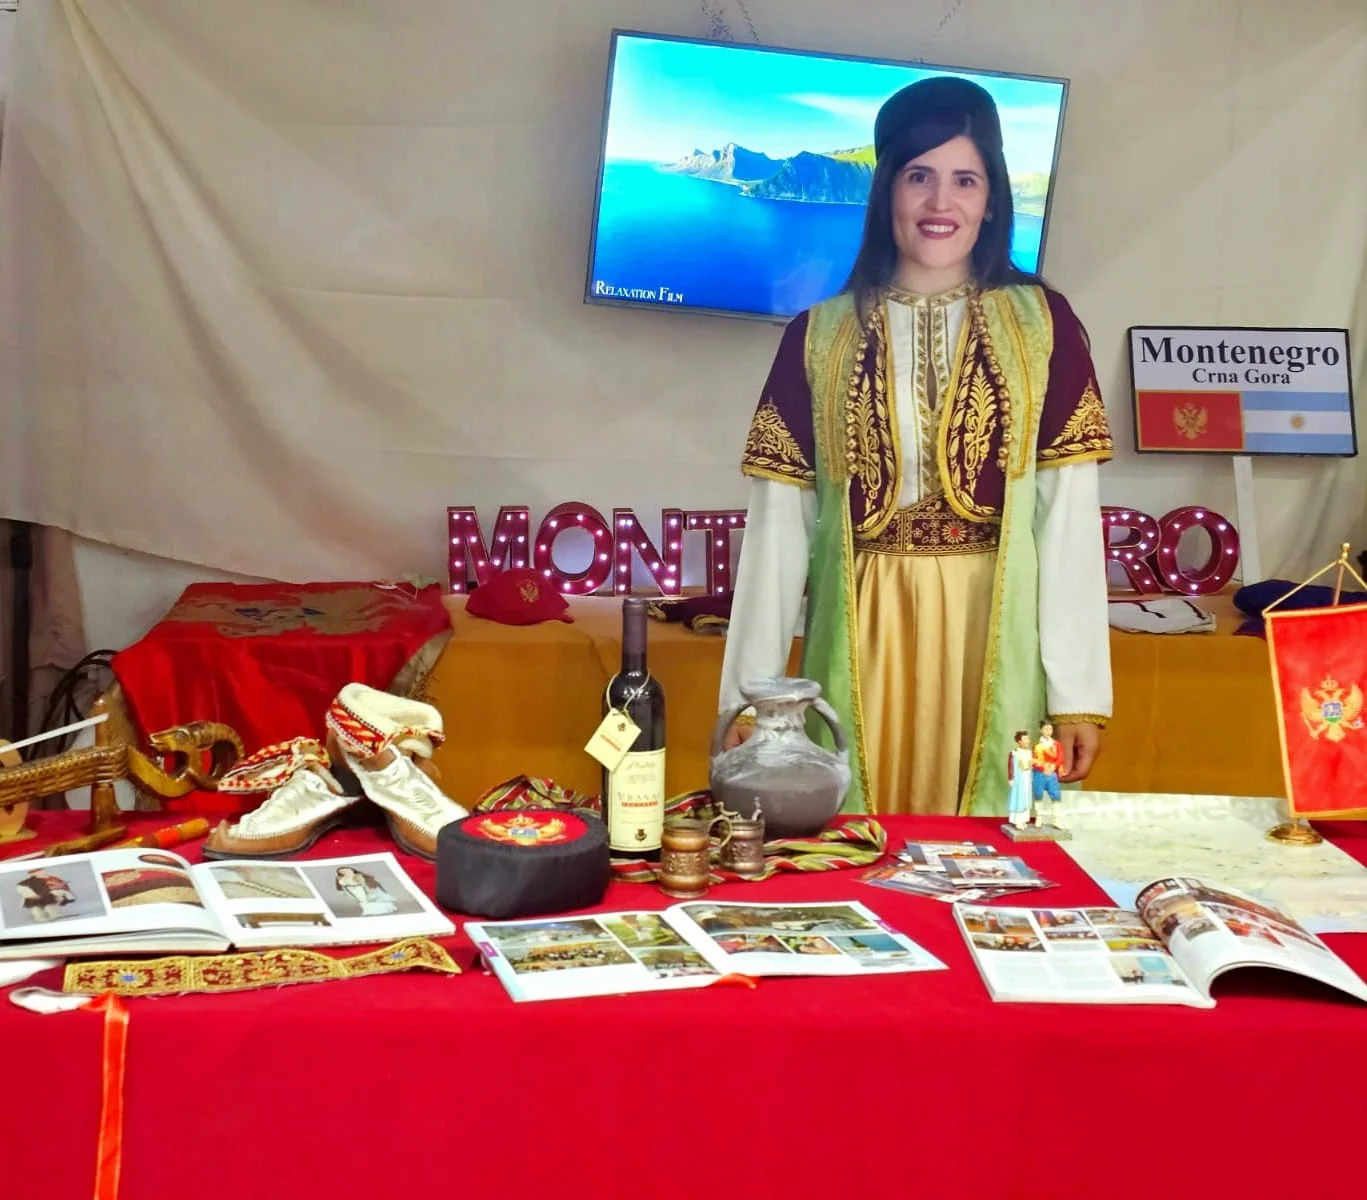 Crnogorska dijaspora sa juga Argentine učestvovala na tradicionalnom Festivalu inostranih zajednica